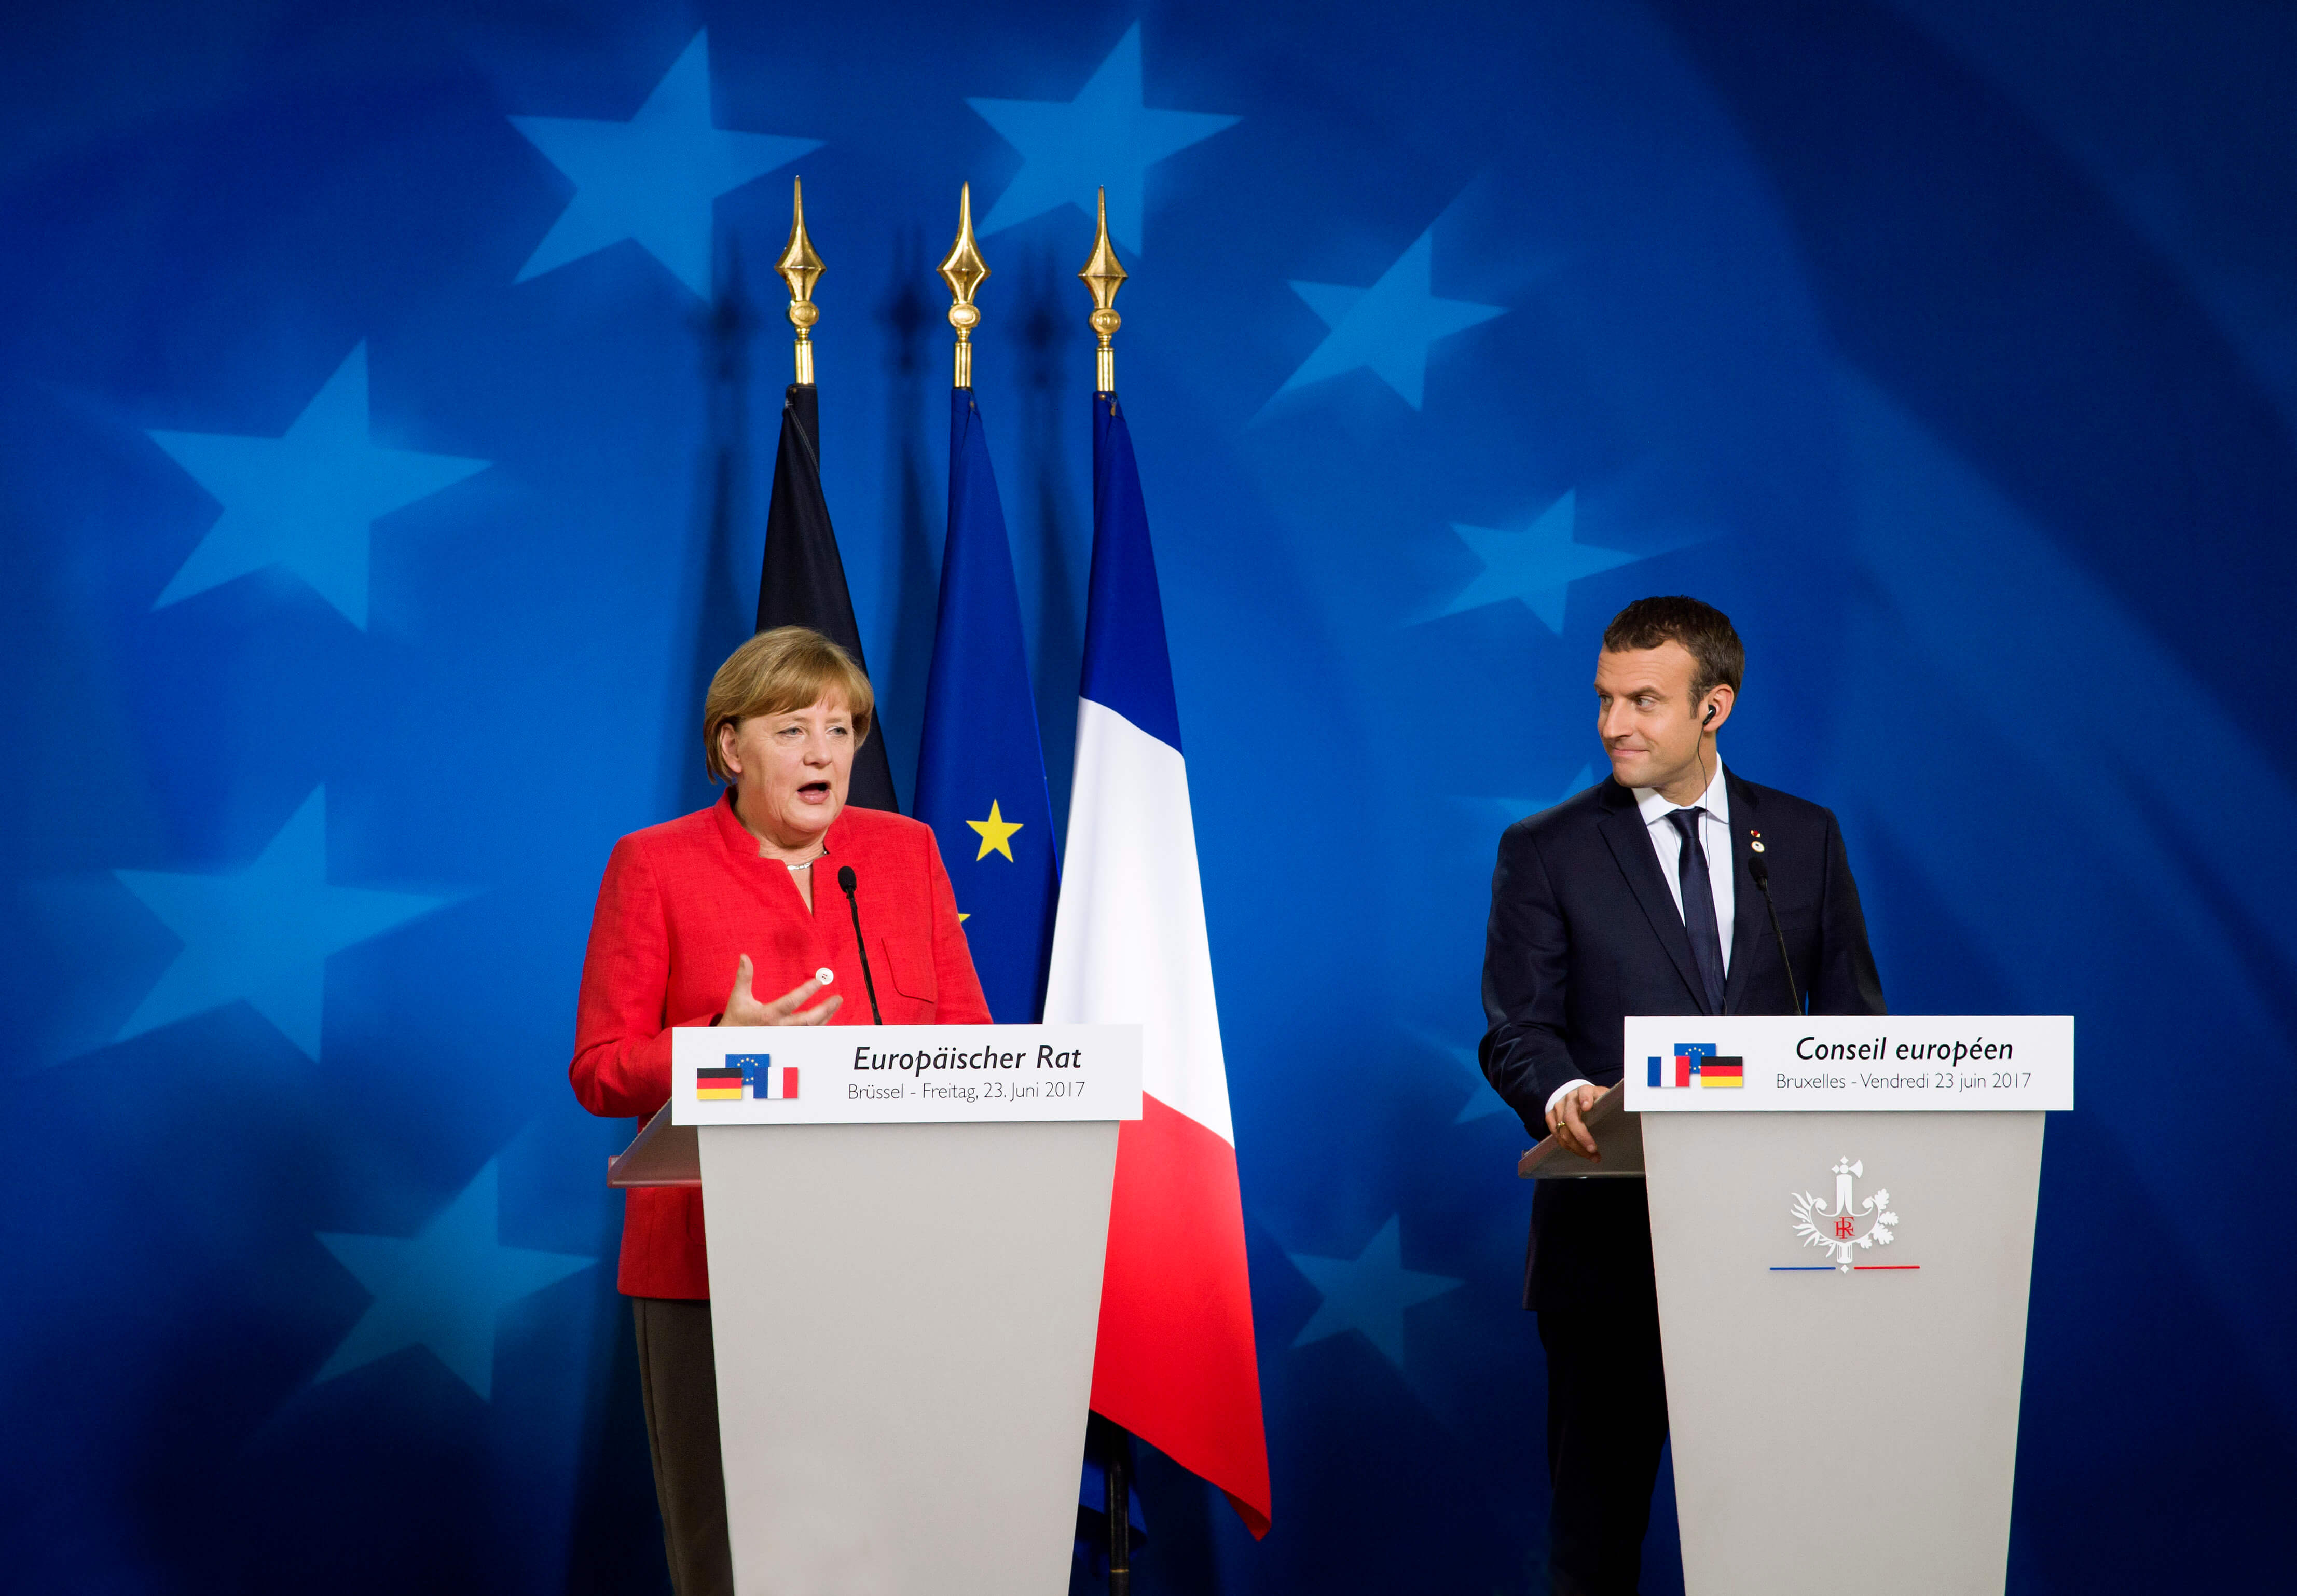 Ook nu kent de Europese Unie met Duitsland en Frankrijk een machtig duo dat lijkt in te zetten op verdere integratie. Bron: European Council